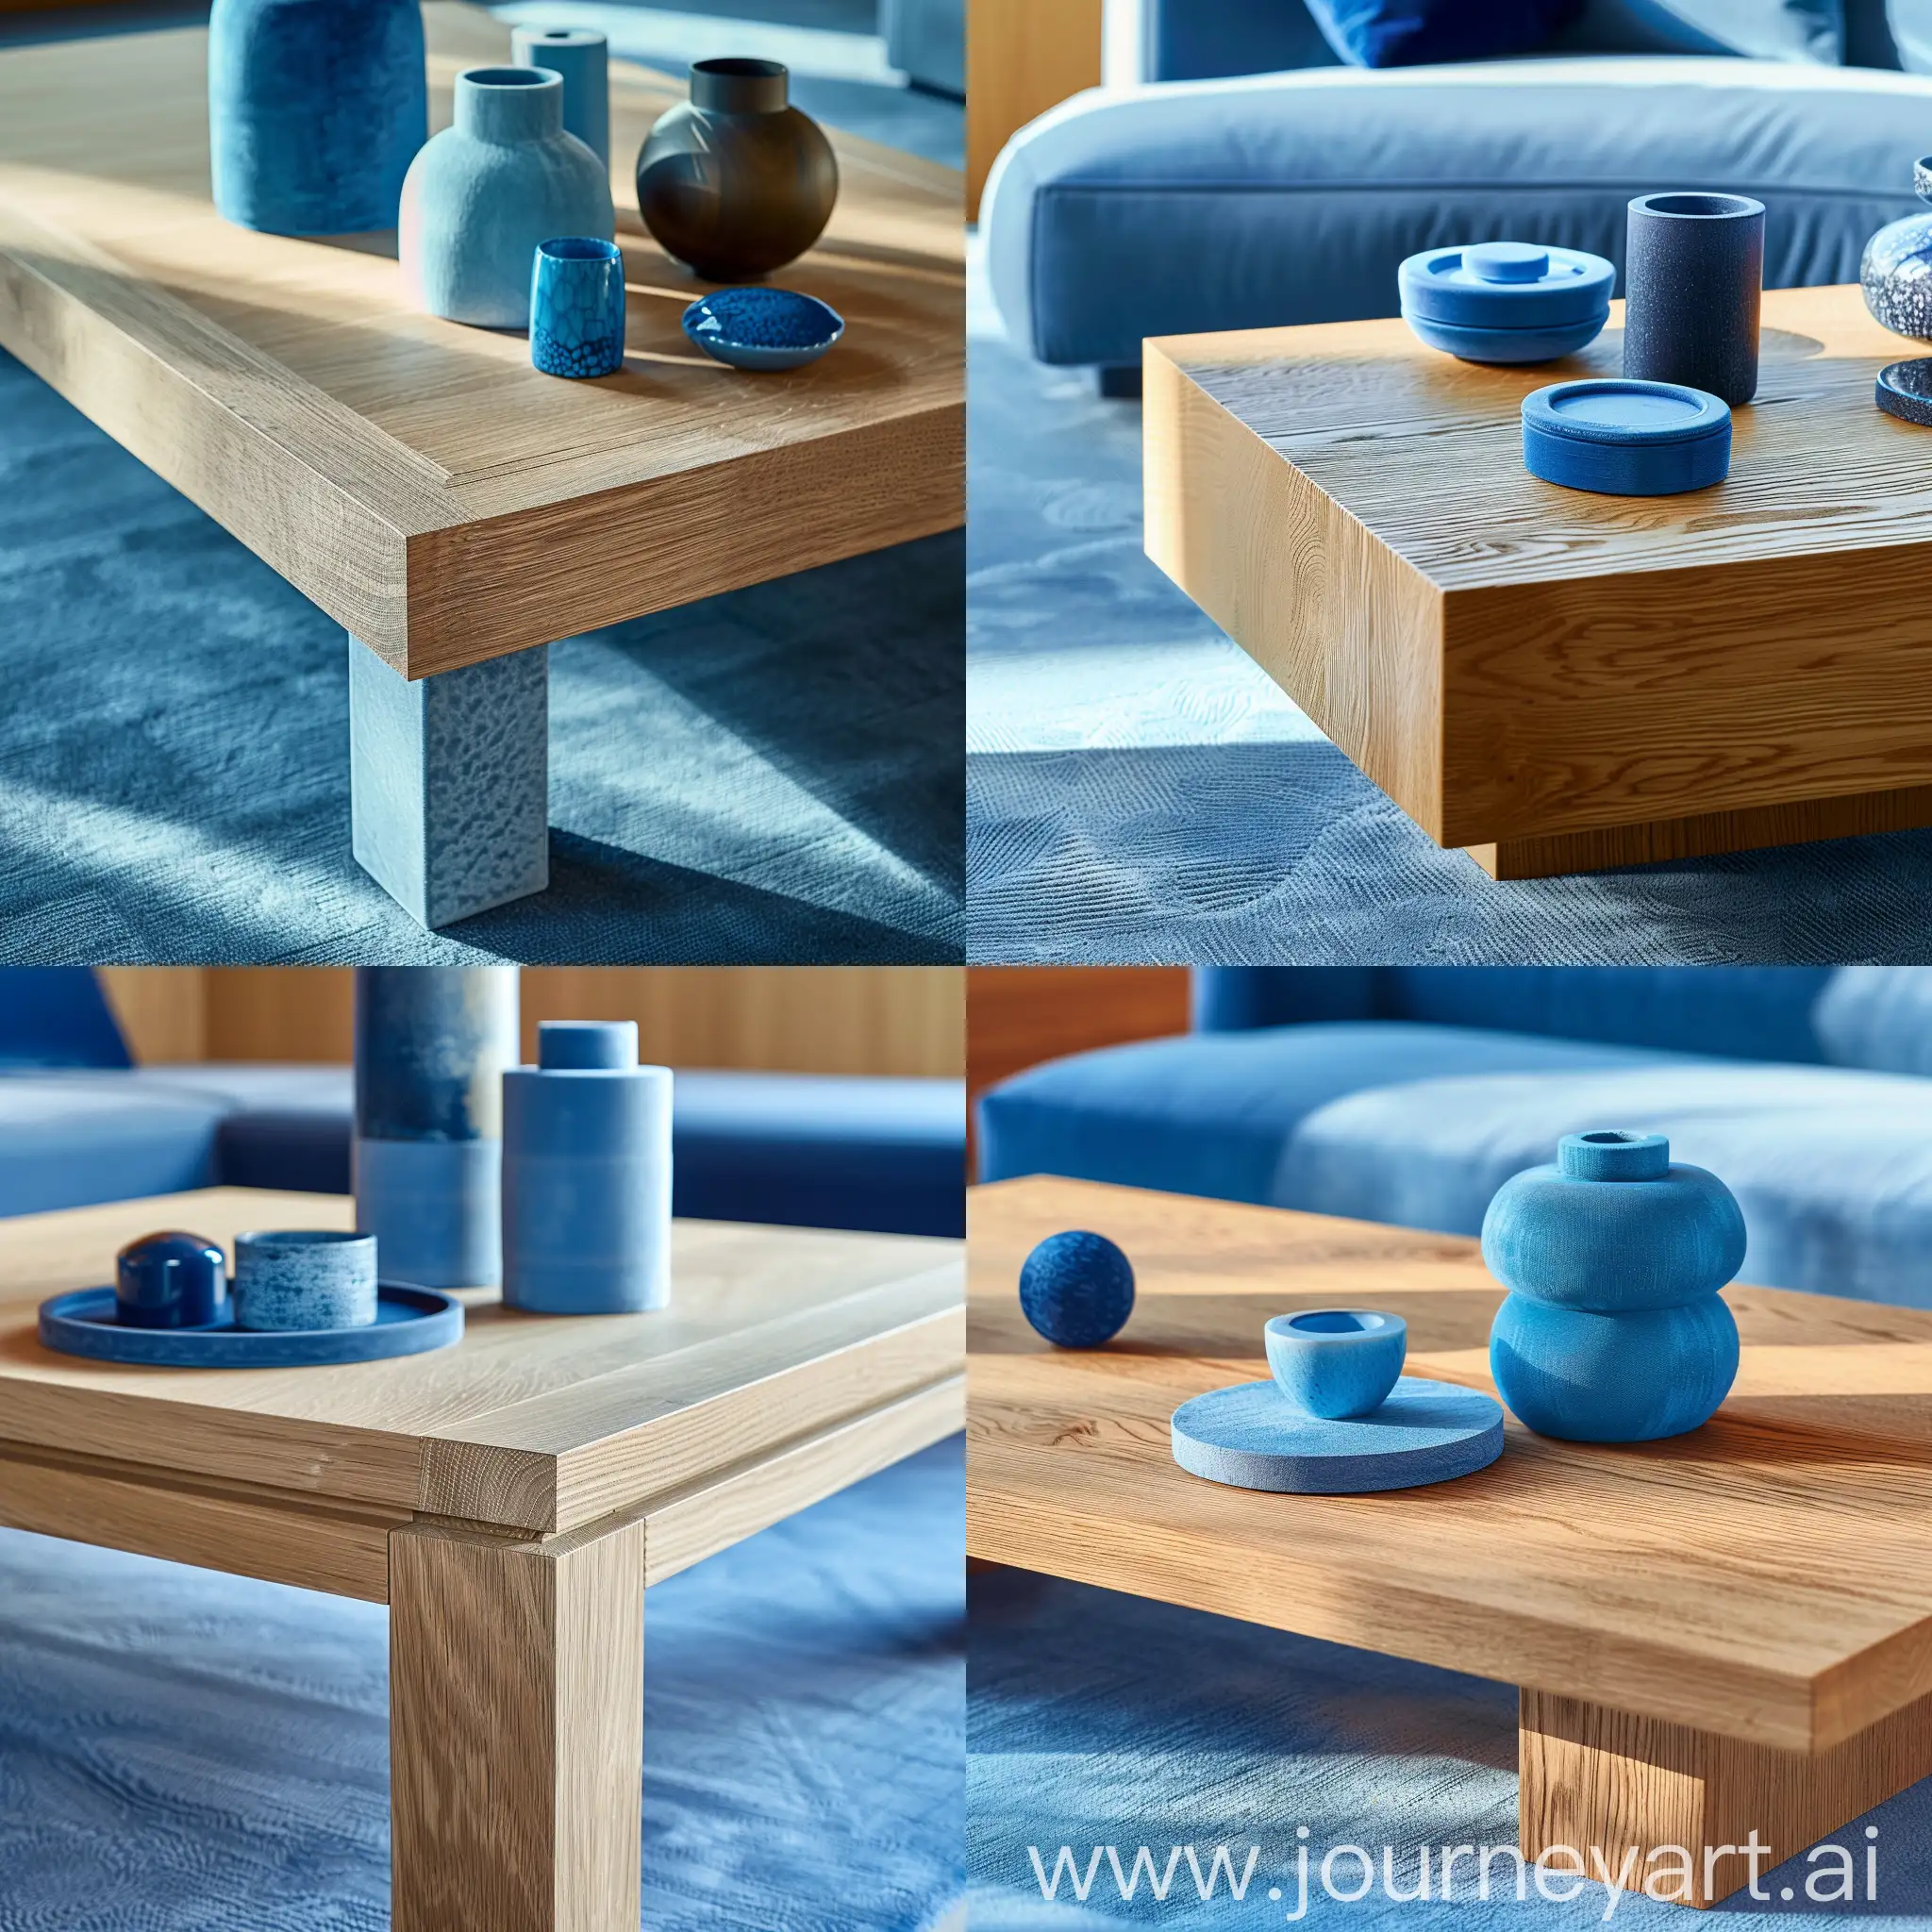 dettaglio di un tavolino da caffè rovere con accessori blu. tappeto azzurrino.  Stile moderno. luce del mattino calda